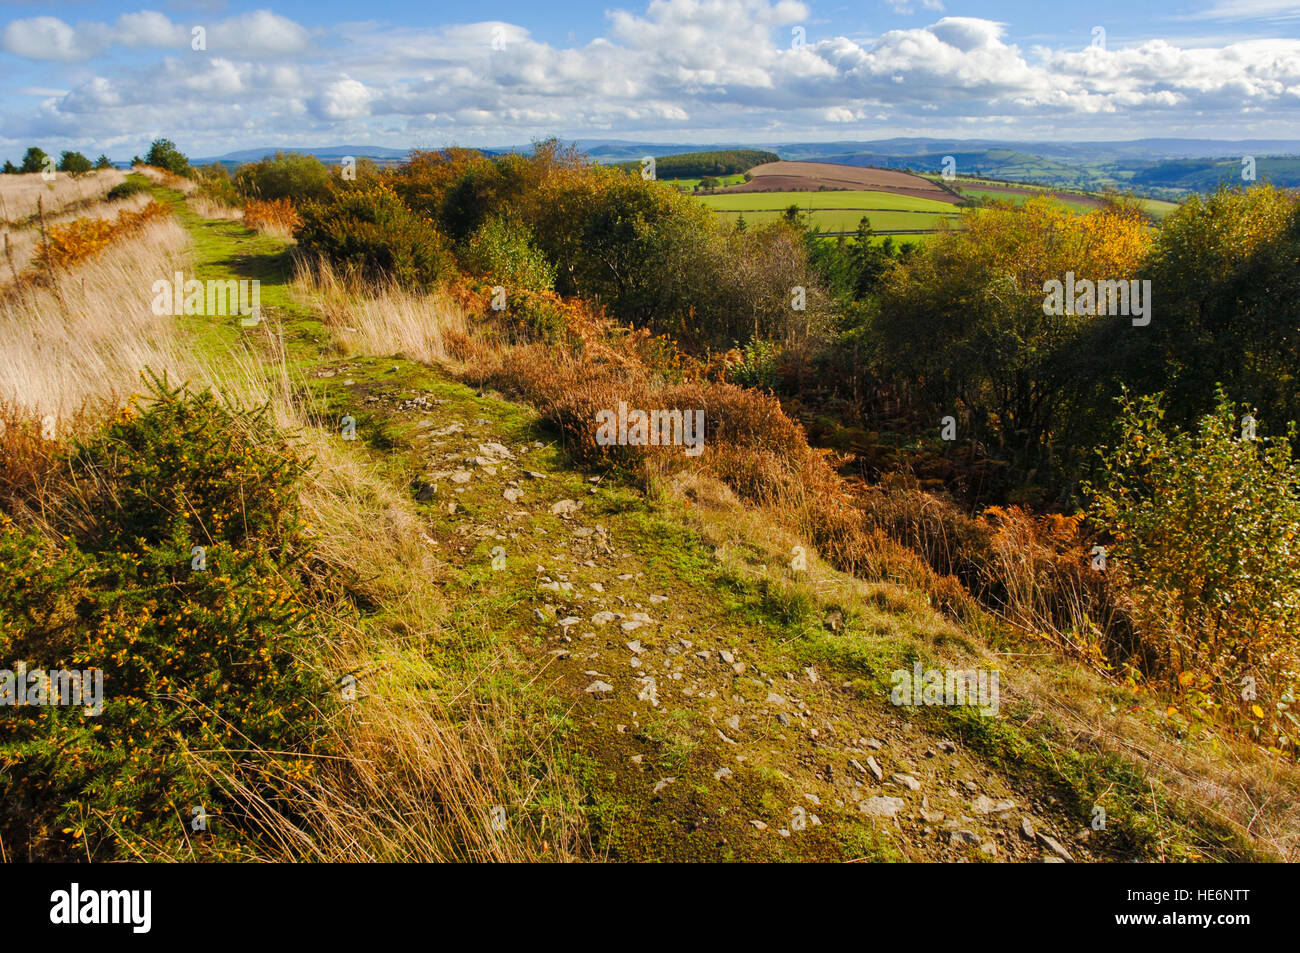 Enterrar las zanjas de los castros de la edad de hierro cerca de Clun, Shropshire, Inglaterra, Reino Unido. Foto de stock